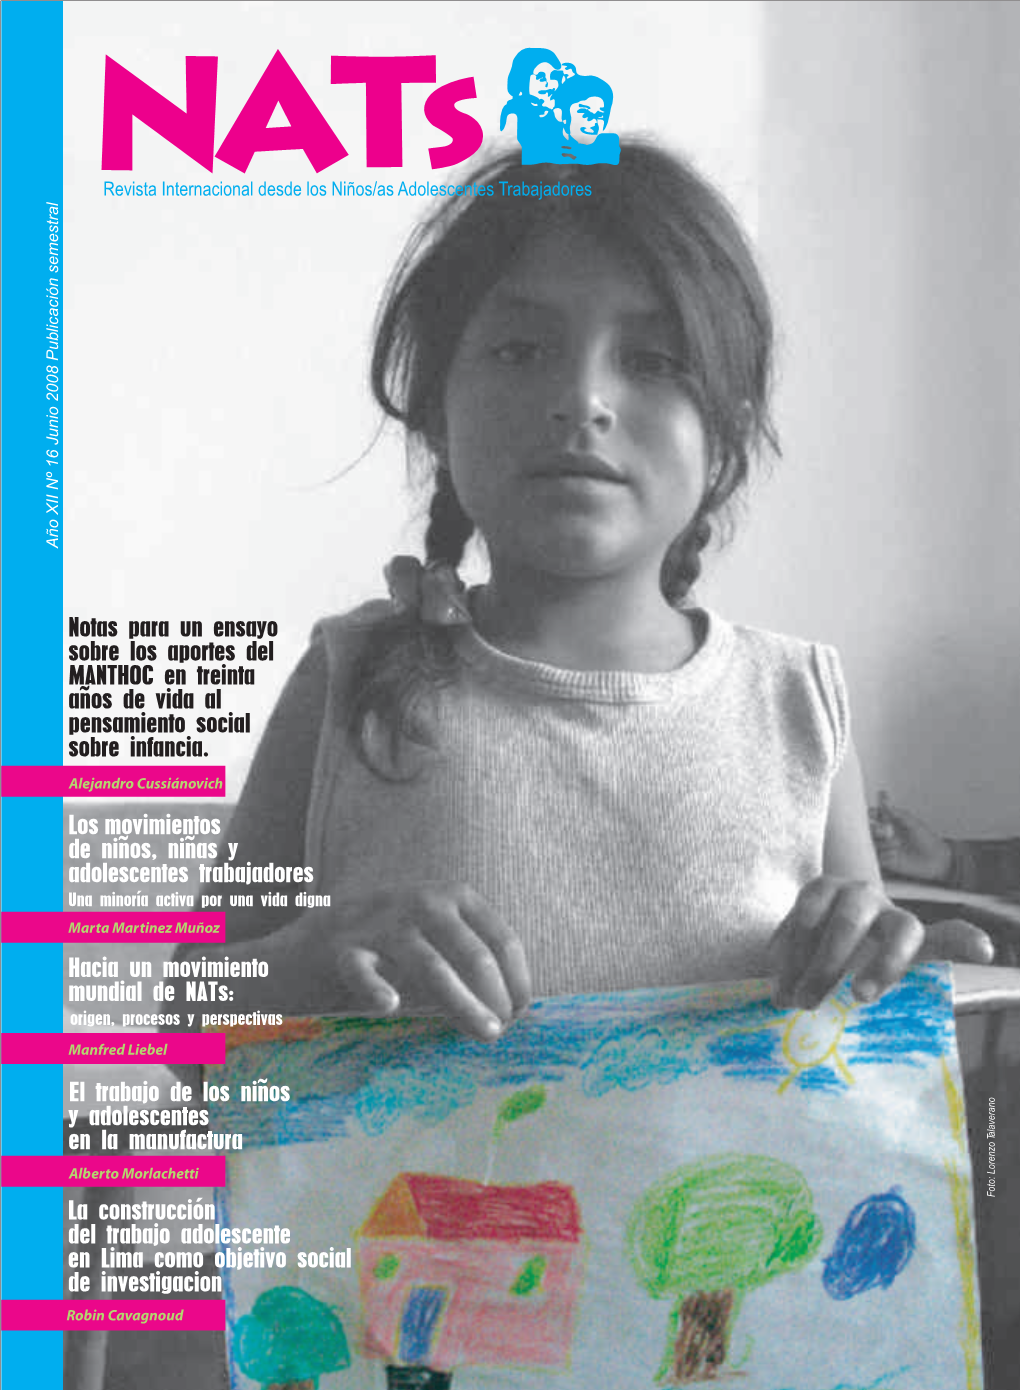 Revista Internacional Desde Los Nats Nº 16 IFEJANT. Perú